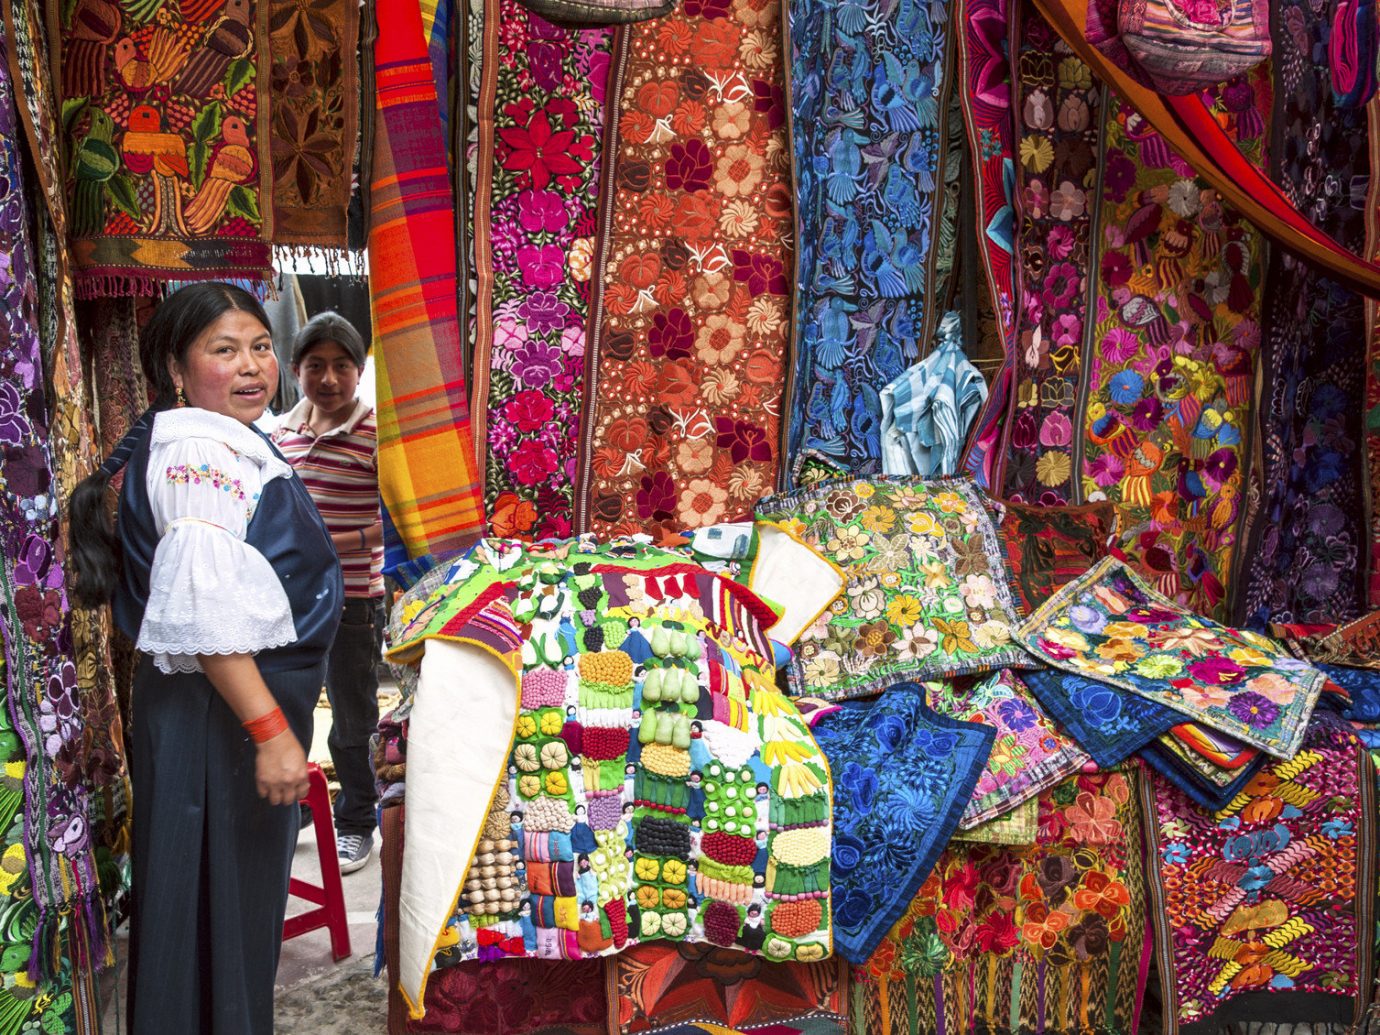 Trip Ideas color clothing bazaar market public space City human settlement colorful art tradition textile colored